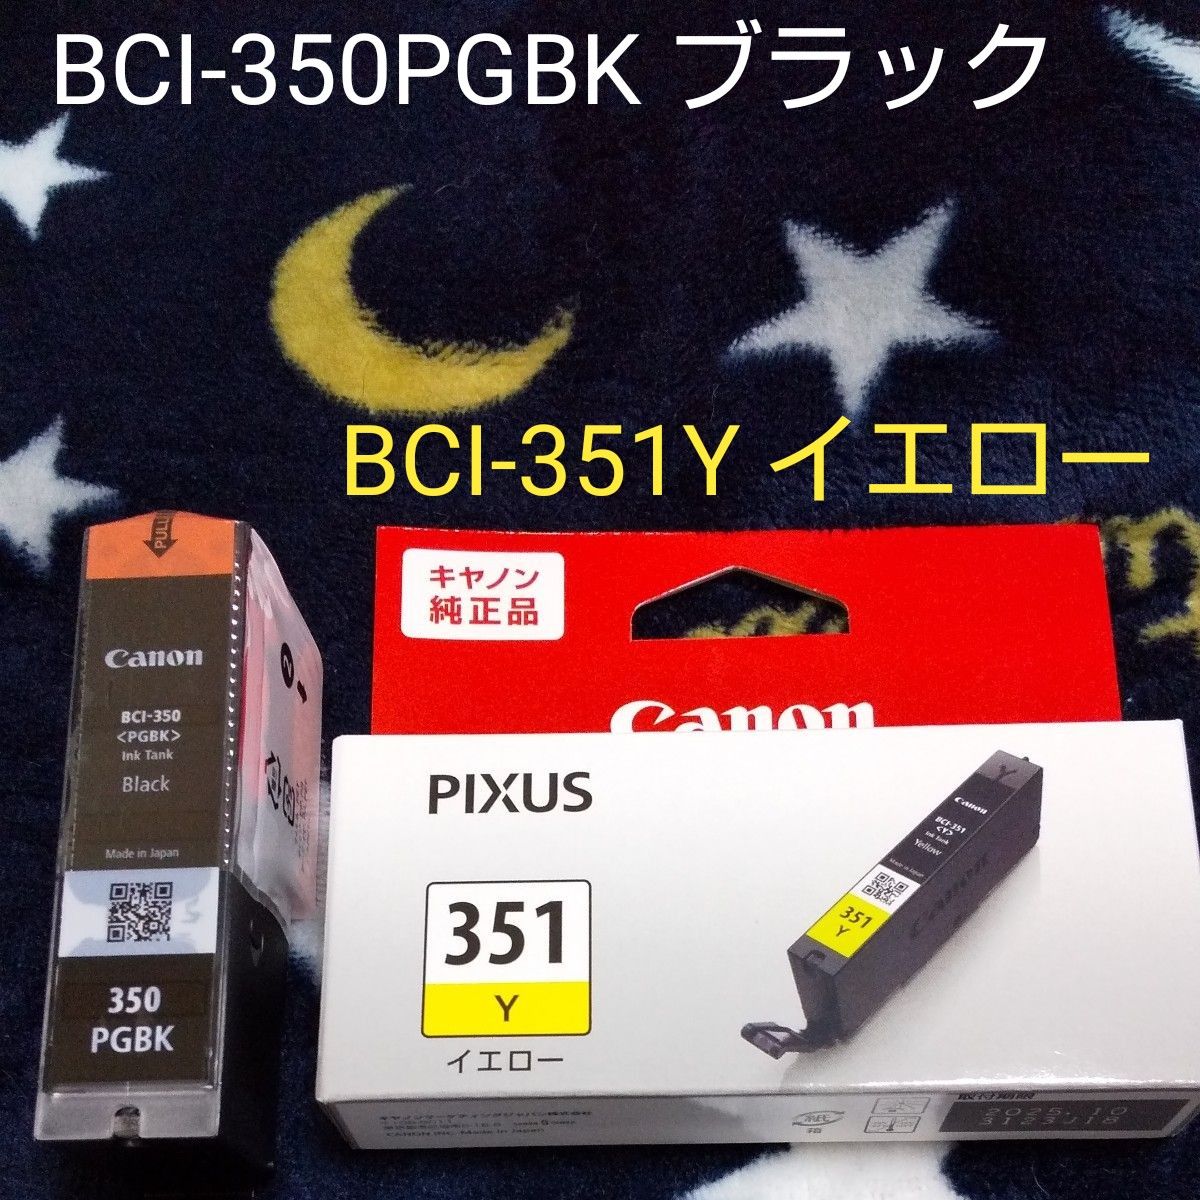 キャノン 純正インク BCI-350 BCI-351Y (2個組)未使用品